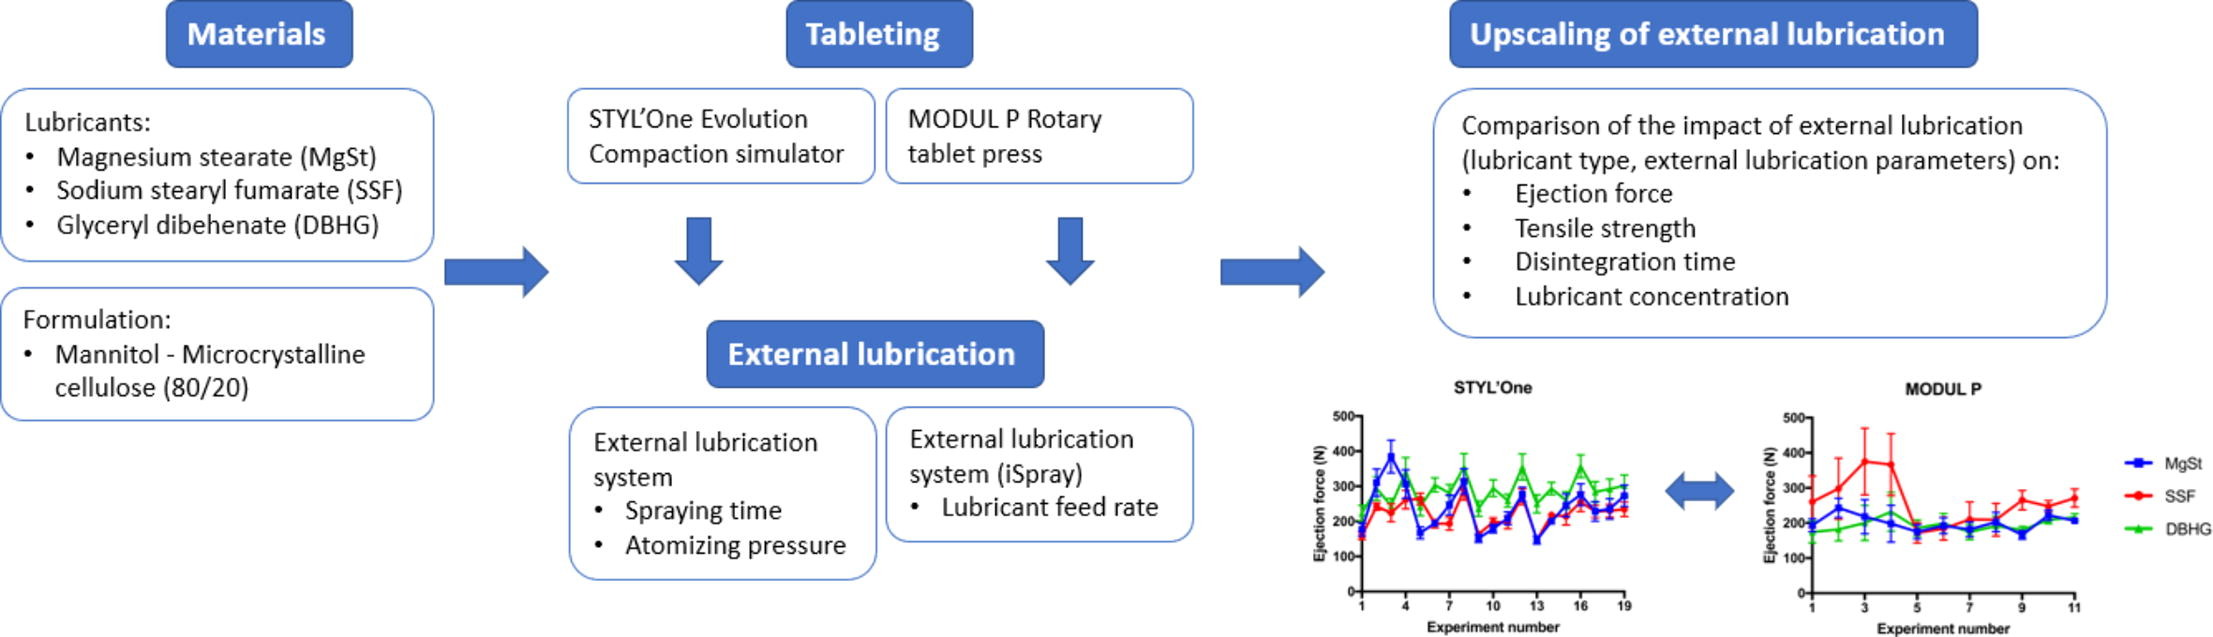 Aumento da lubrificação externa de um simulador de compactação para uma prensa rotativa de comprimidos